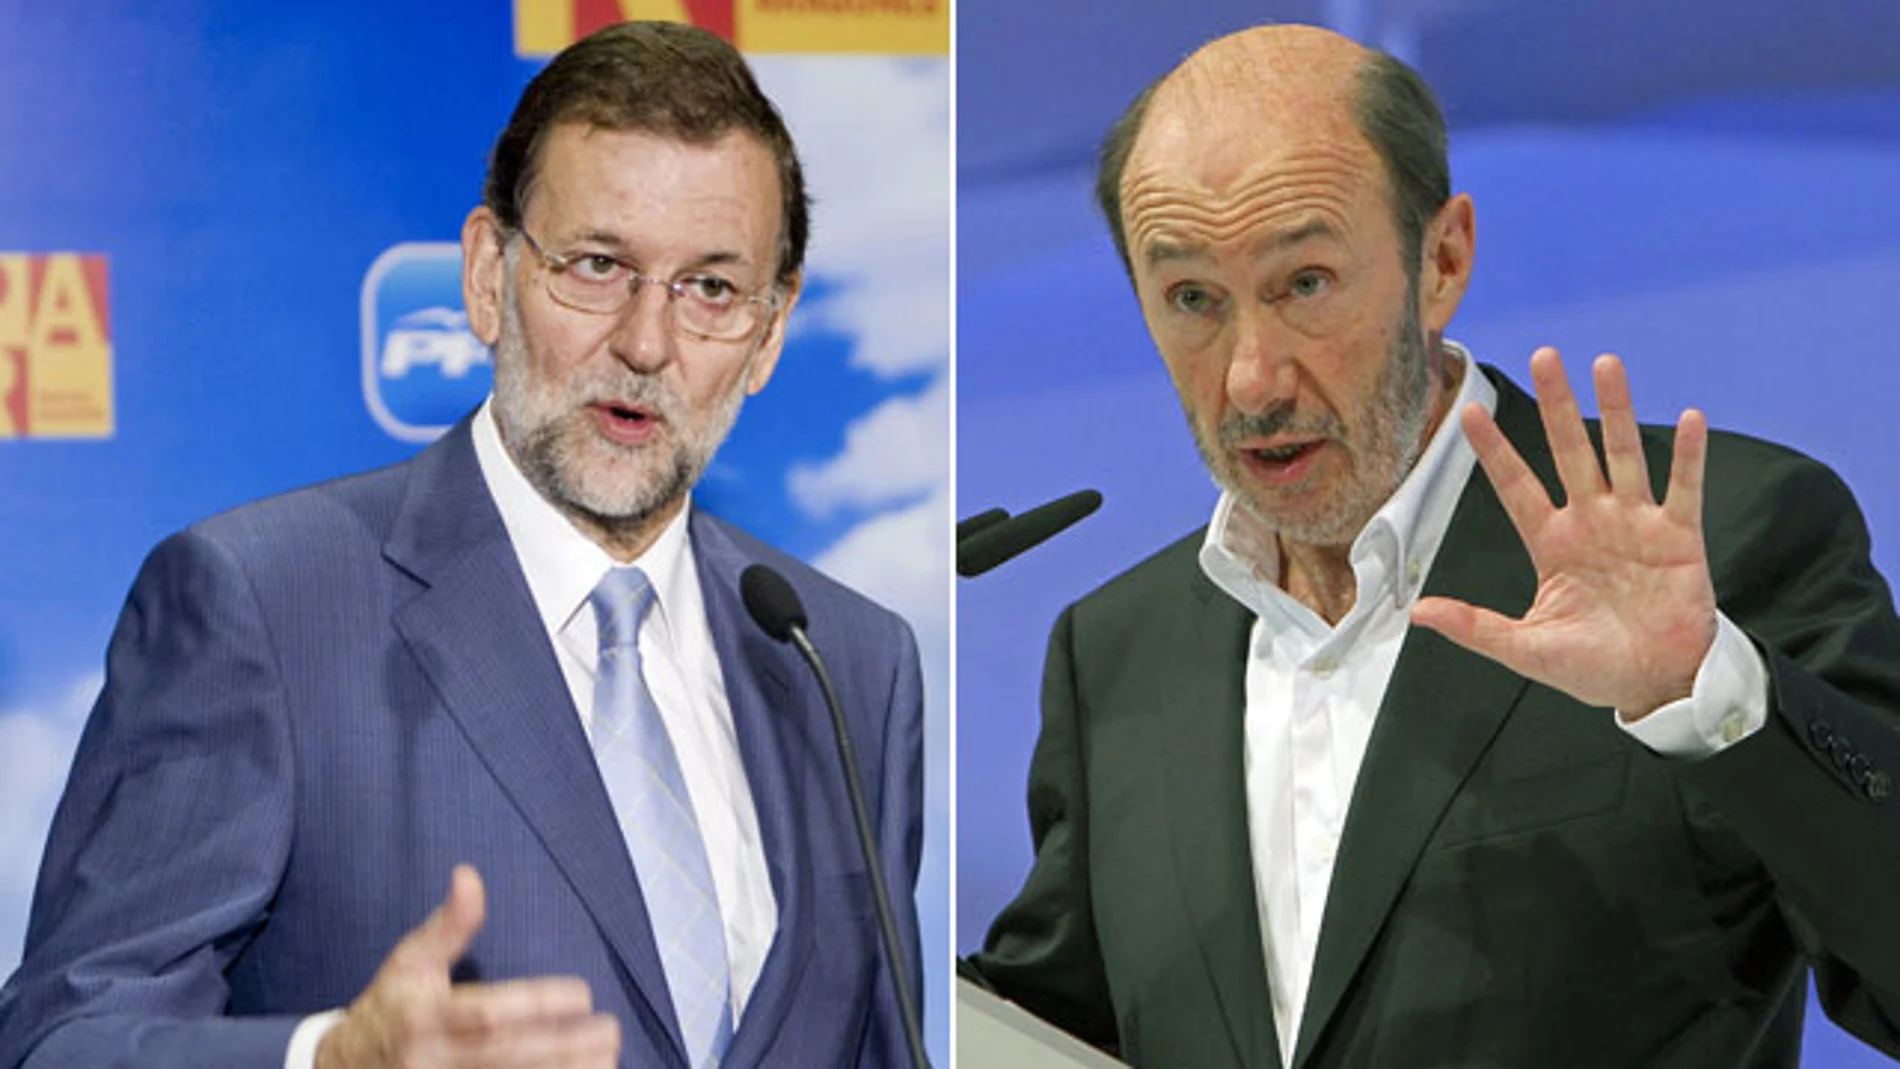 PSOE y PP afrontan la precampaña con lemas y colores parecidos